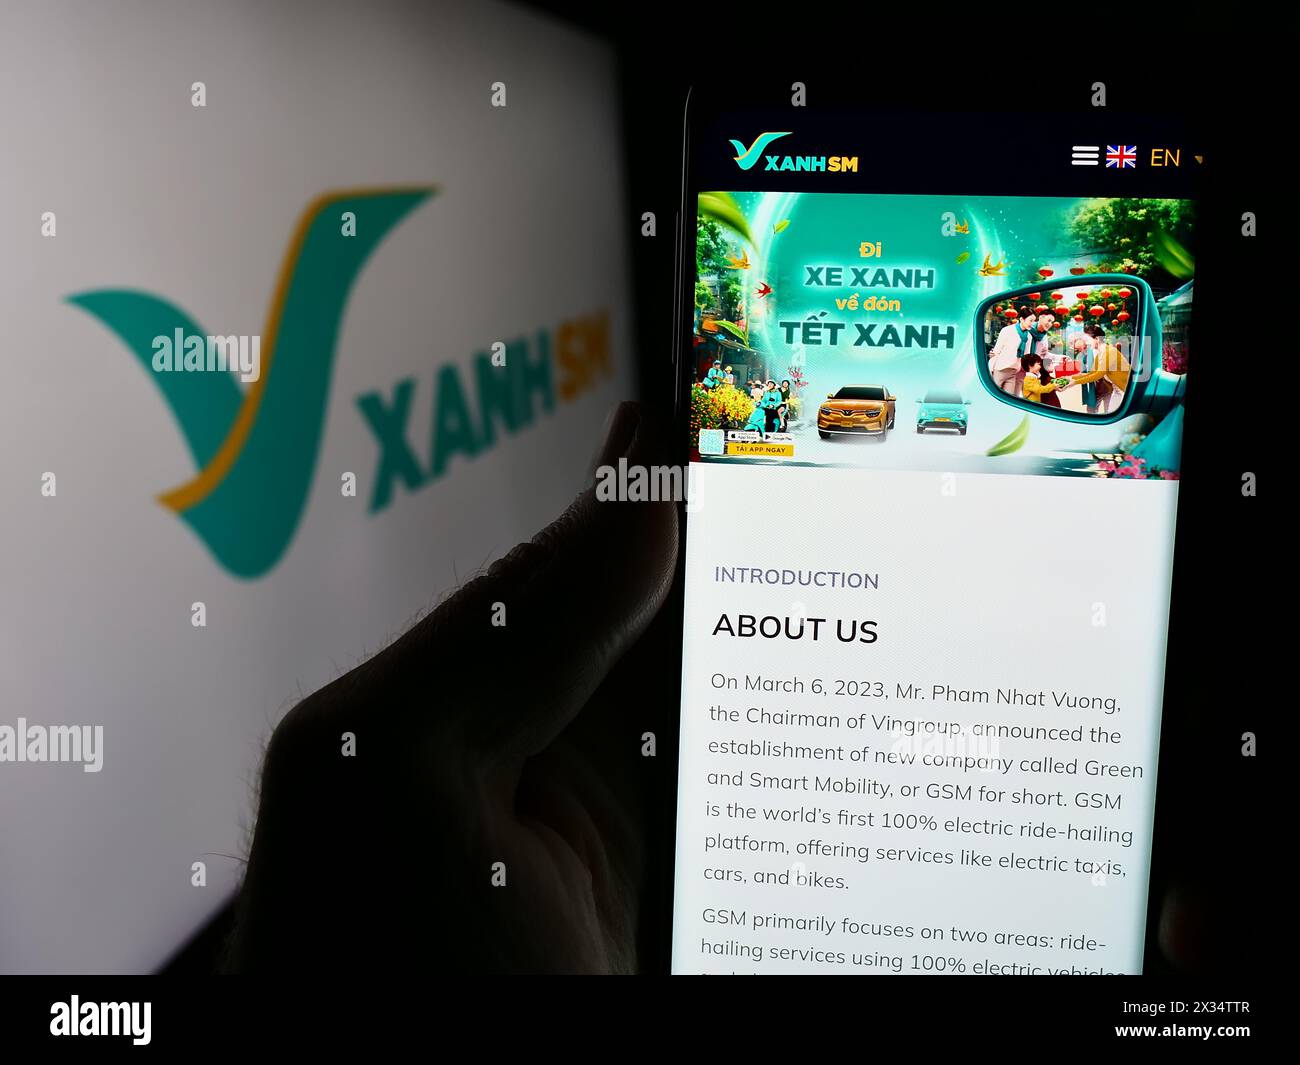 Persona che possiede uno smartphone con il sito web della società vietnamita Xanh SM davanti al logo aziendale. Messa a fuoco al centro del display del telefono. Foto Stock